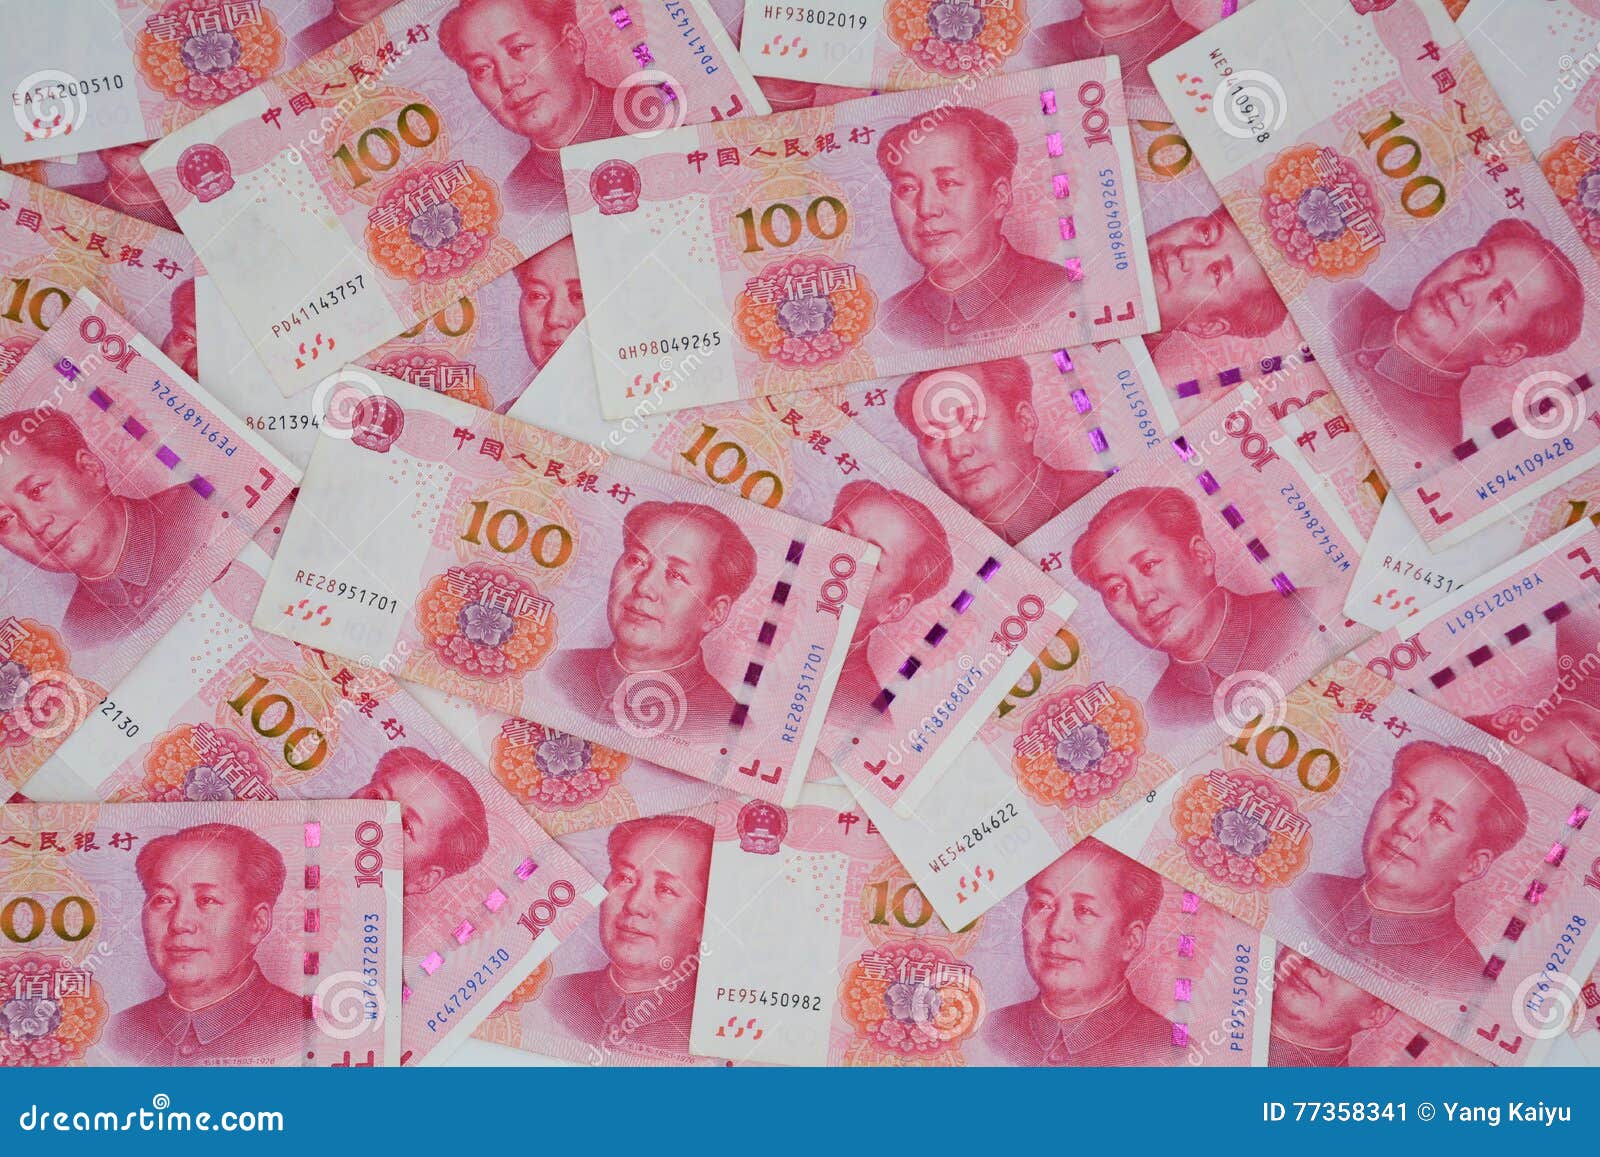 Rmb to rub. Китайские юани код валюты. Конвертируемость юаня. RMB что за валюта. 4000 RMB.